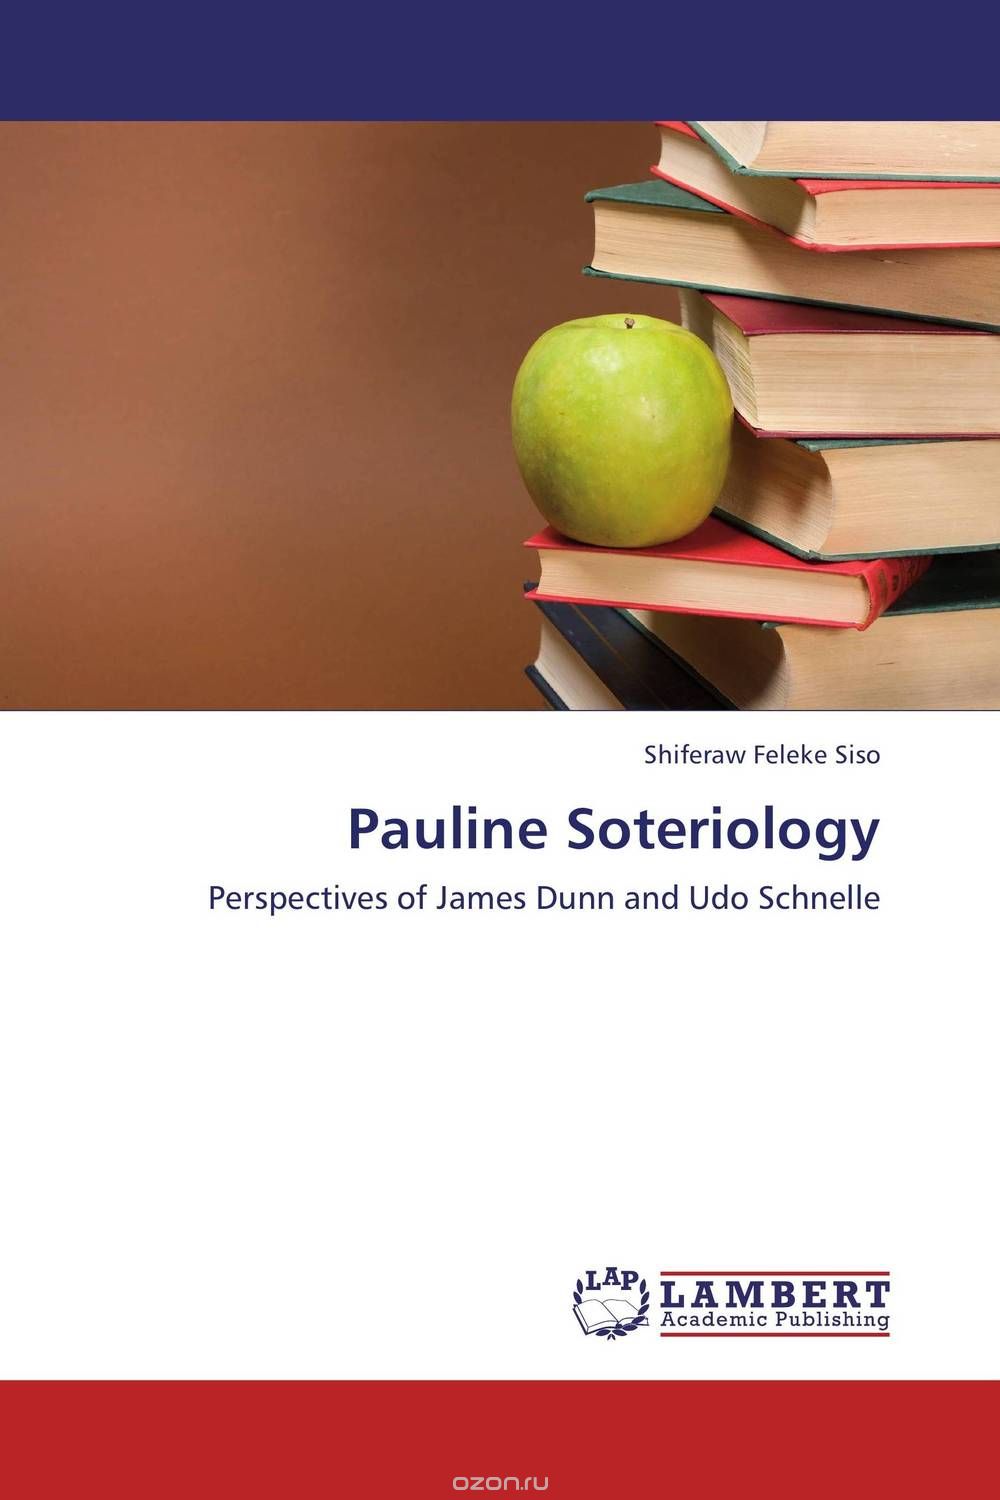 Скачать книгу "Pauline Soteriology"